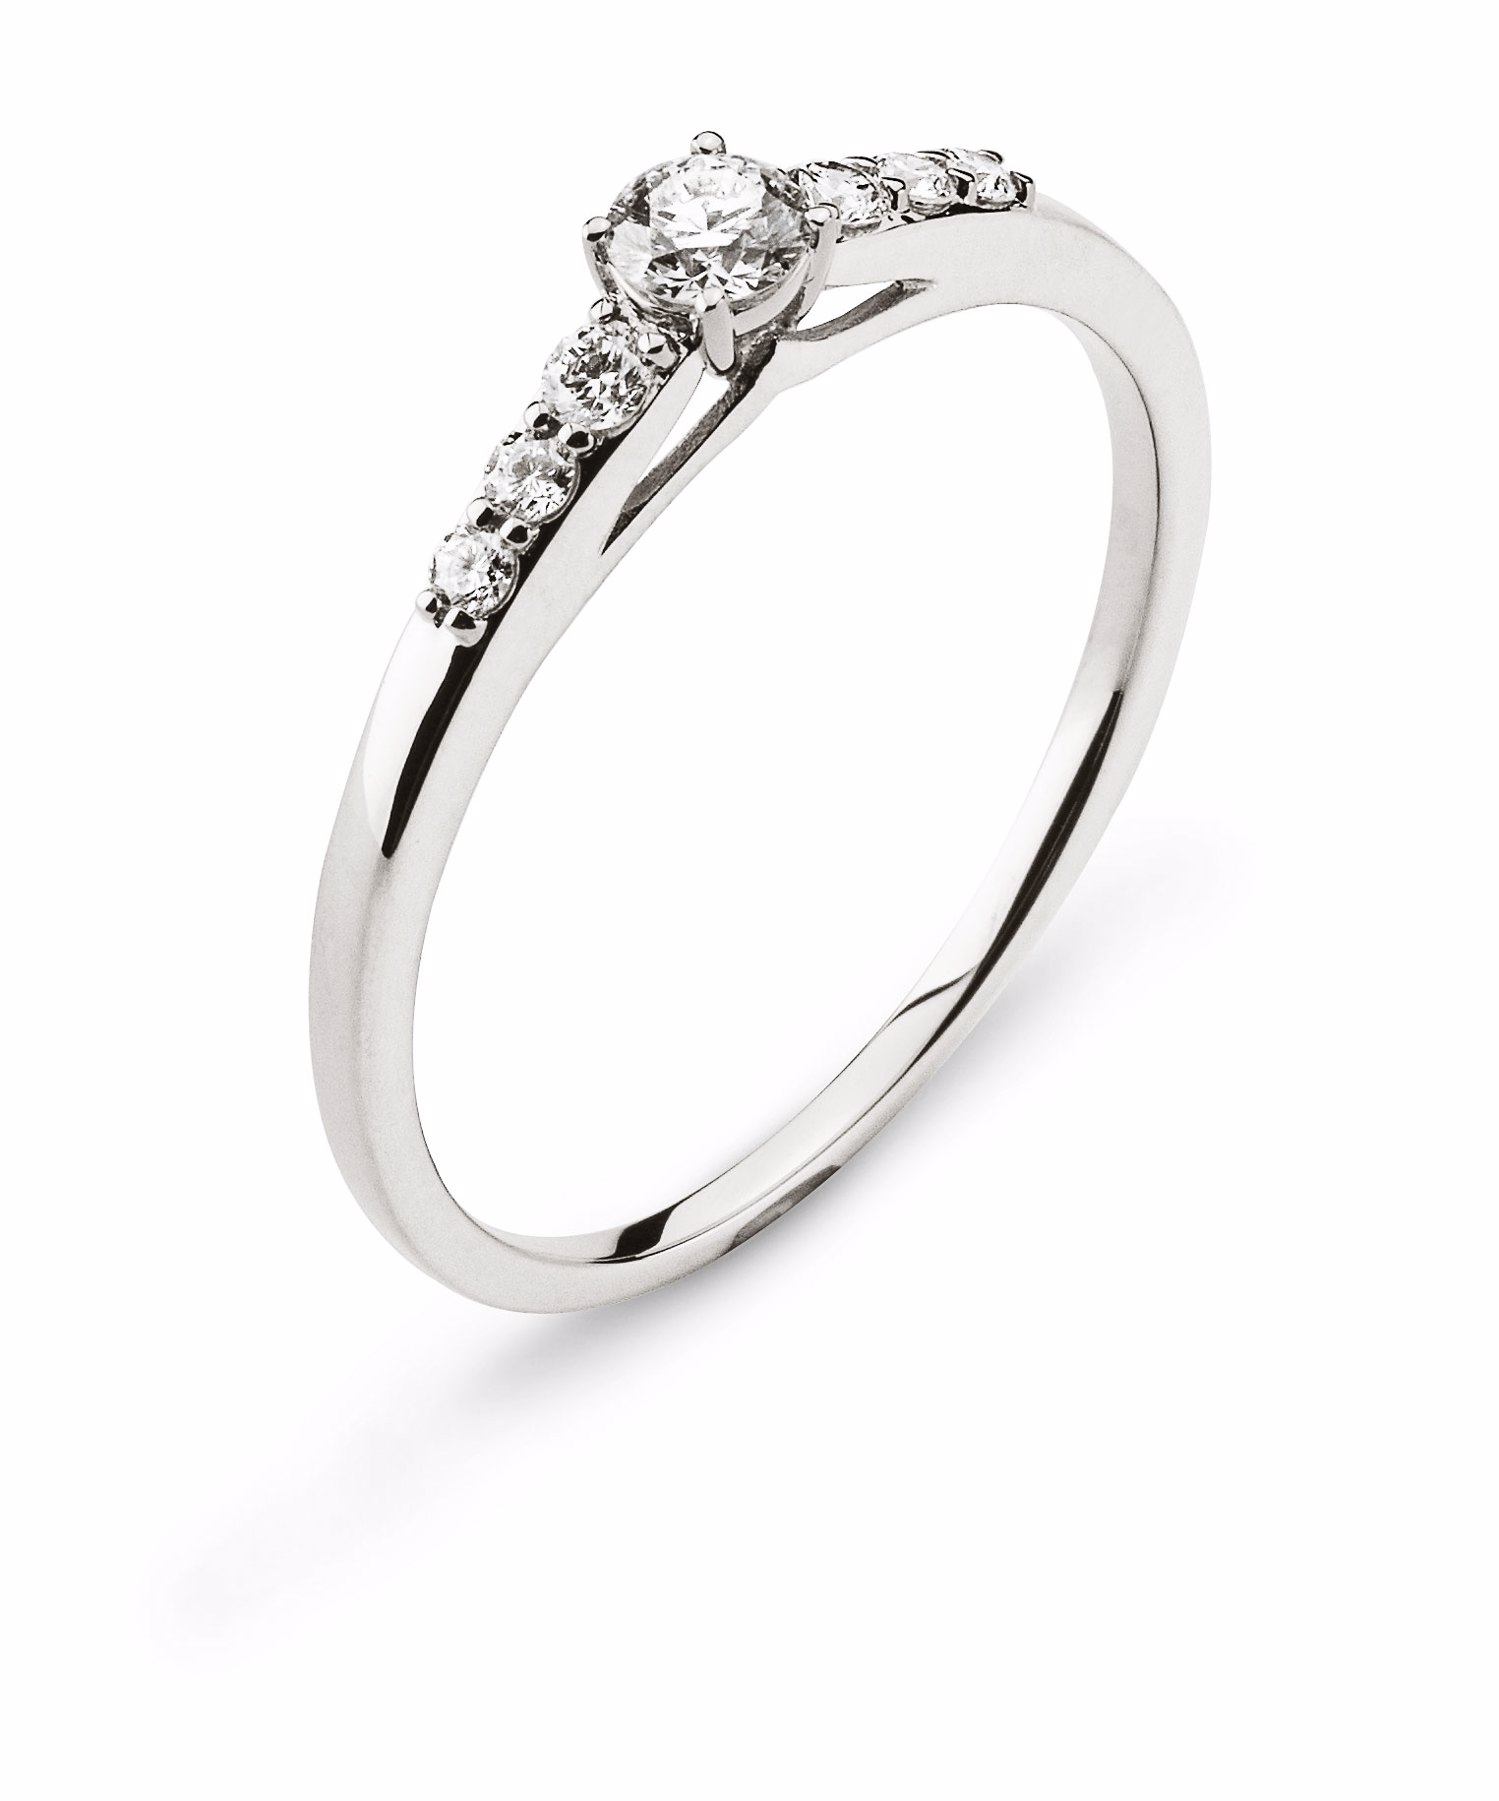 AURONOS Prestige Ring white gold 18K diamonds 0.25ct